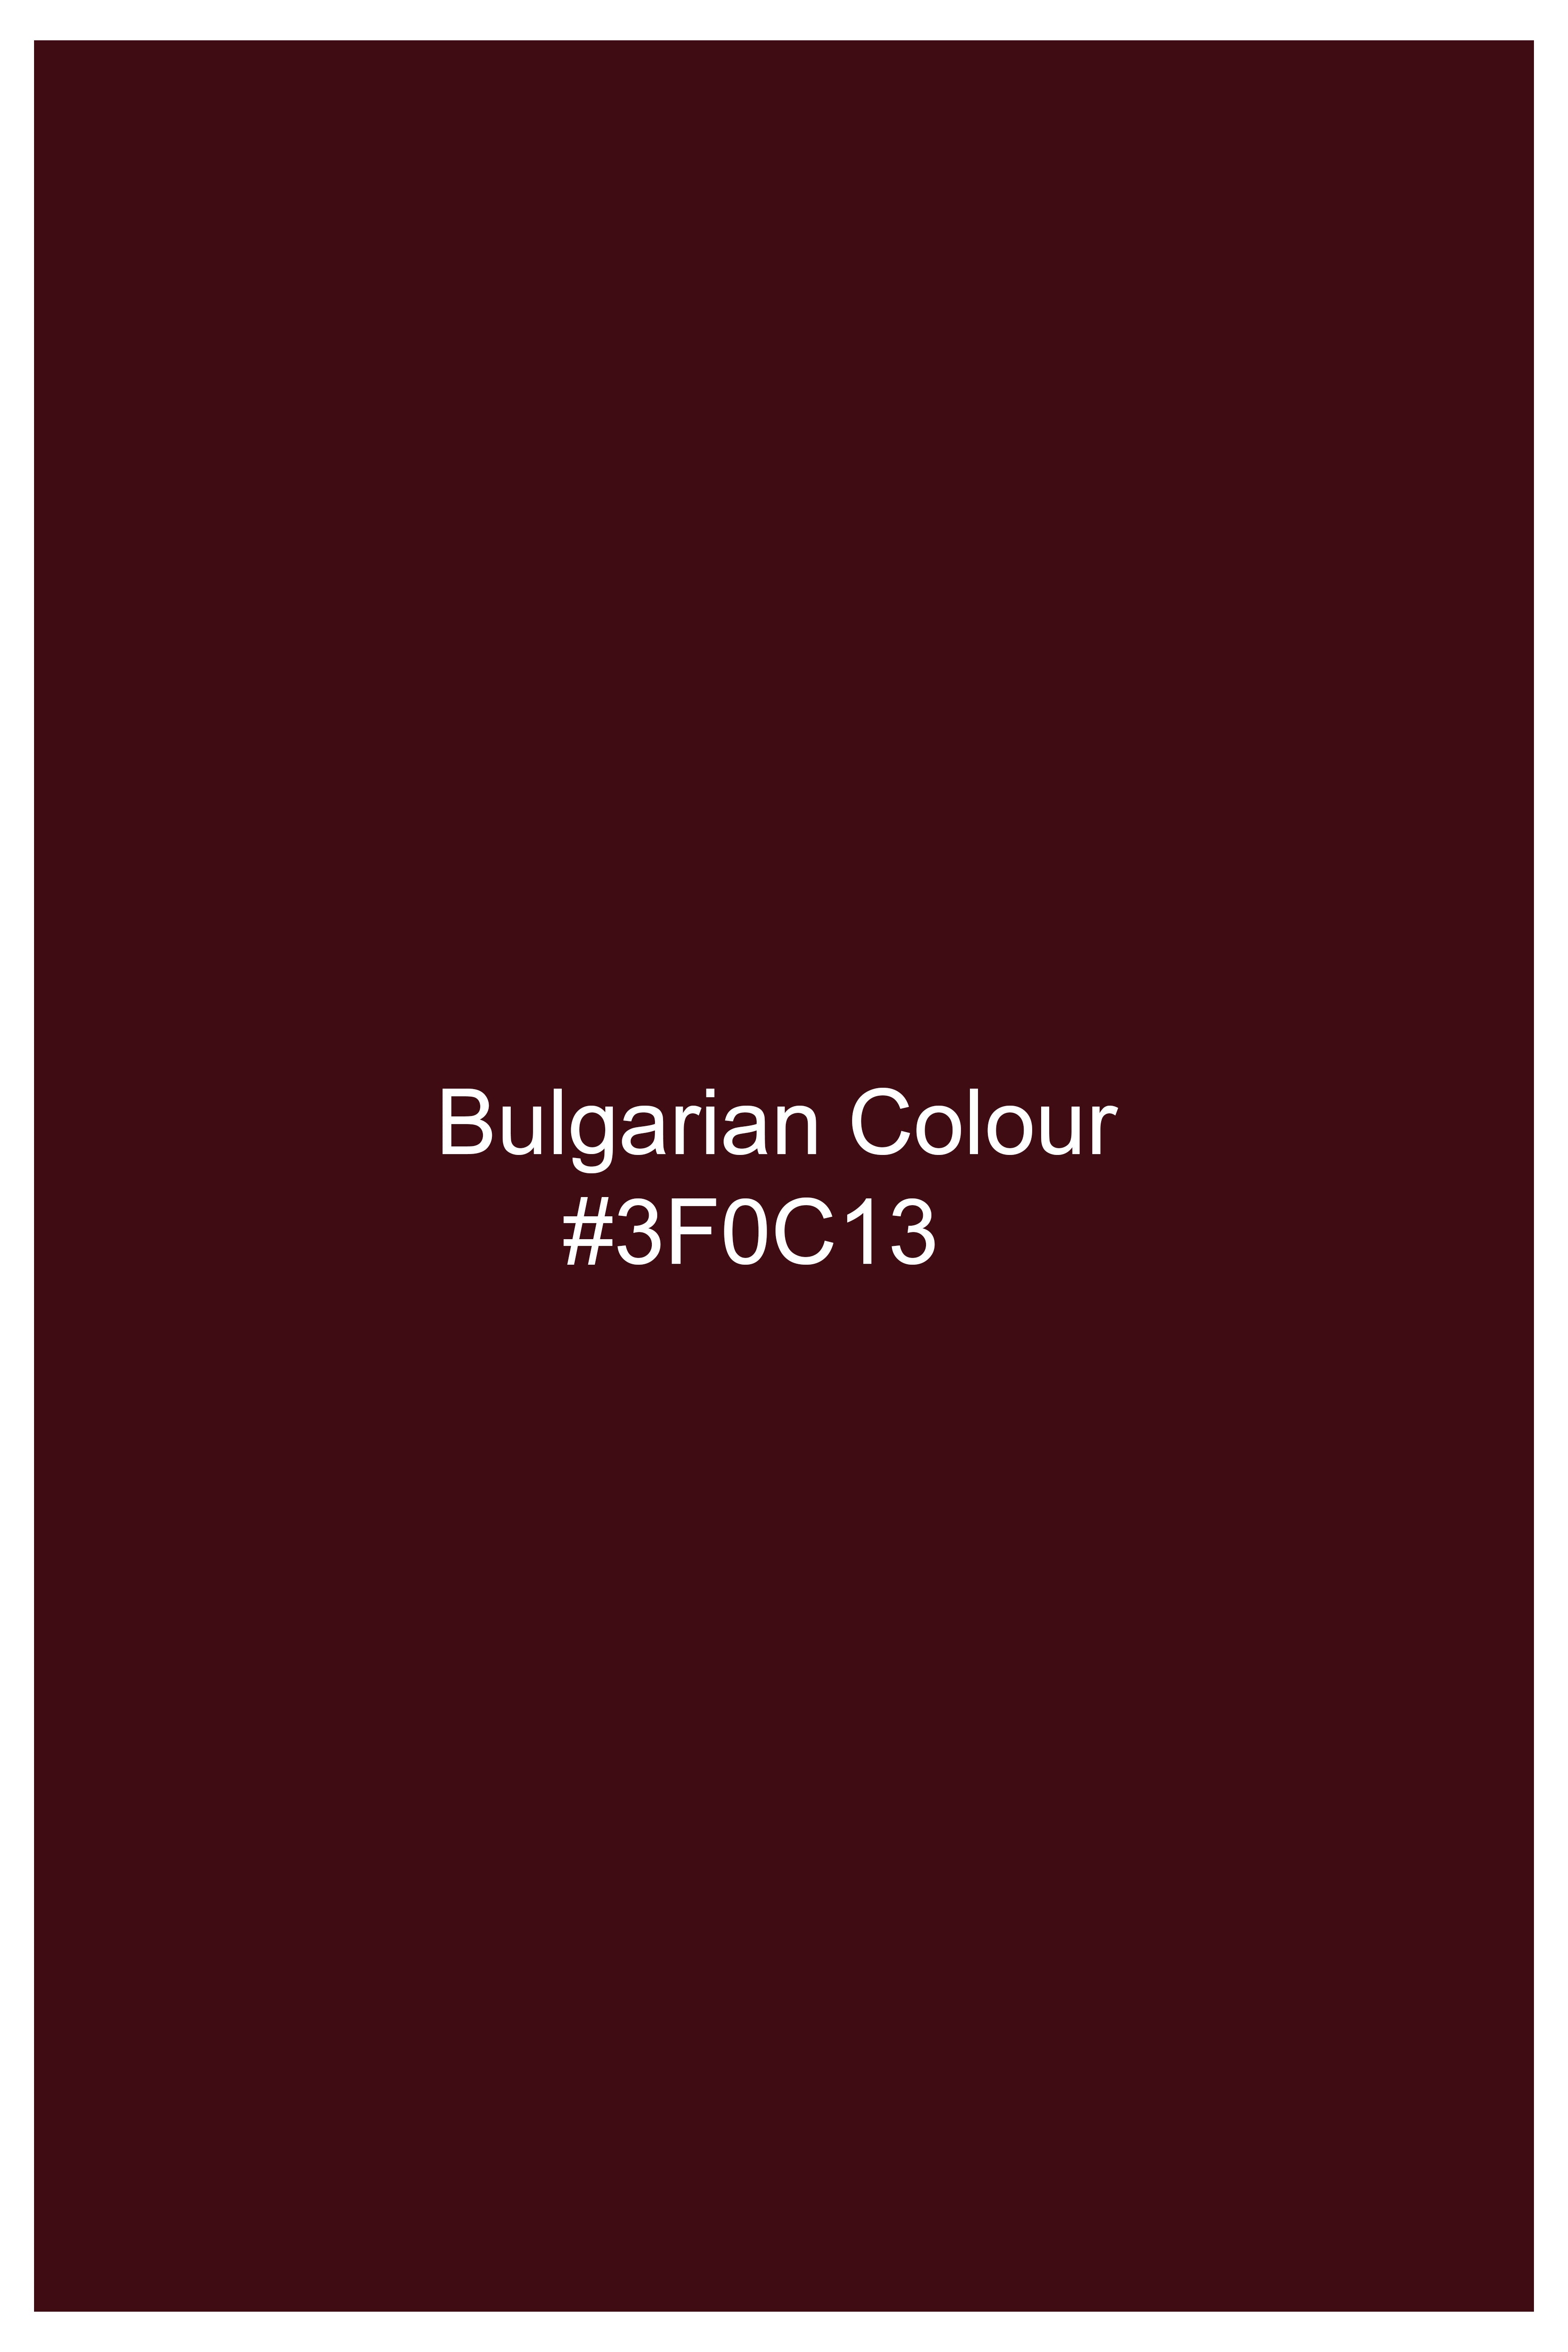 Bulgarian Maroon Crushed Velvet Blazer